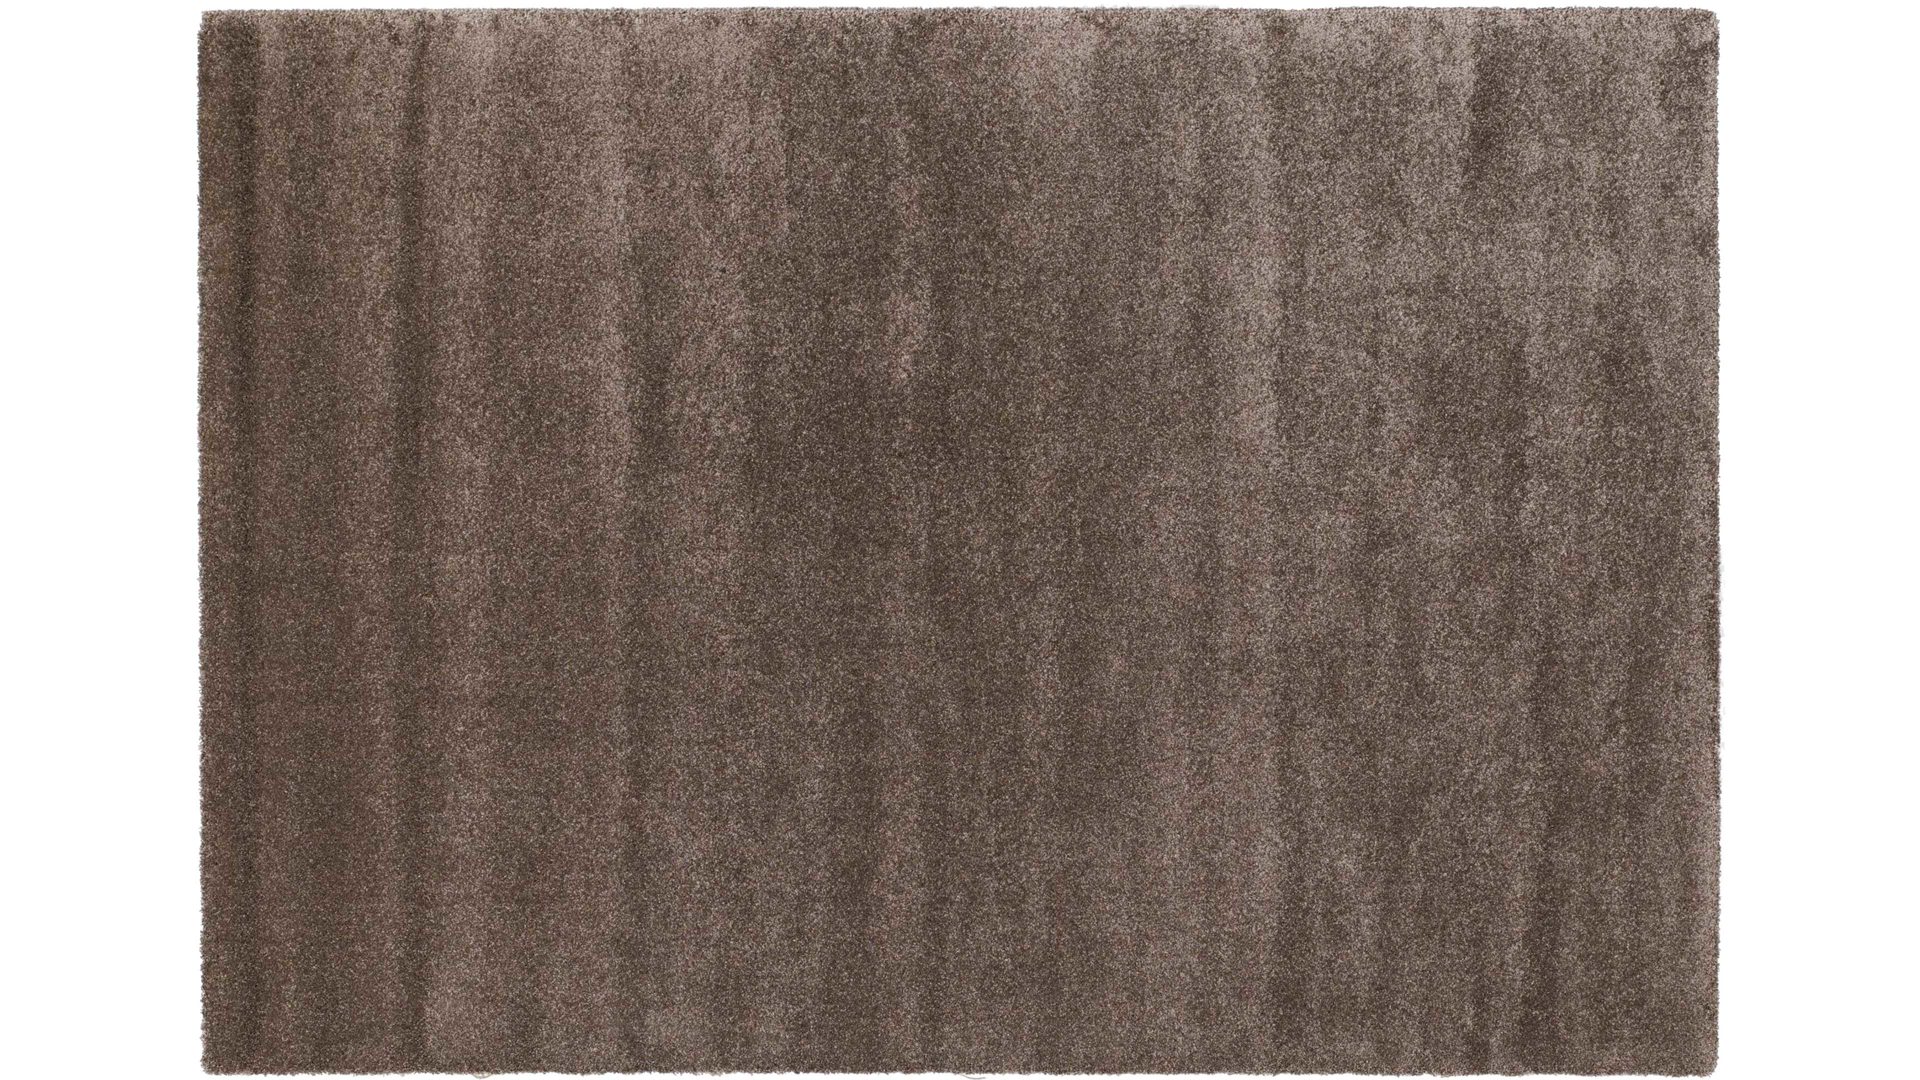 Webteppich Oci aus Kunstfaser in Braun Webteppich Bellevue für Ihre Wohnaccessoires braune Kunstfaser – ca. 160 x 230 cm